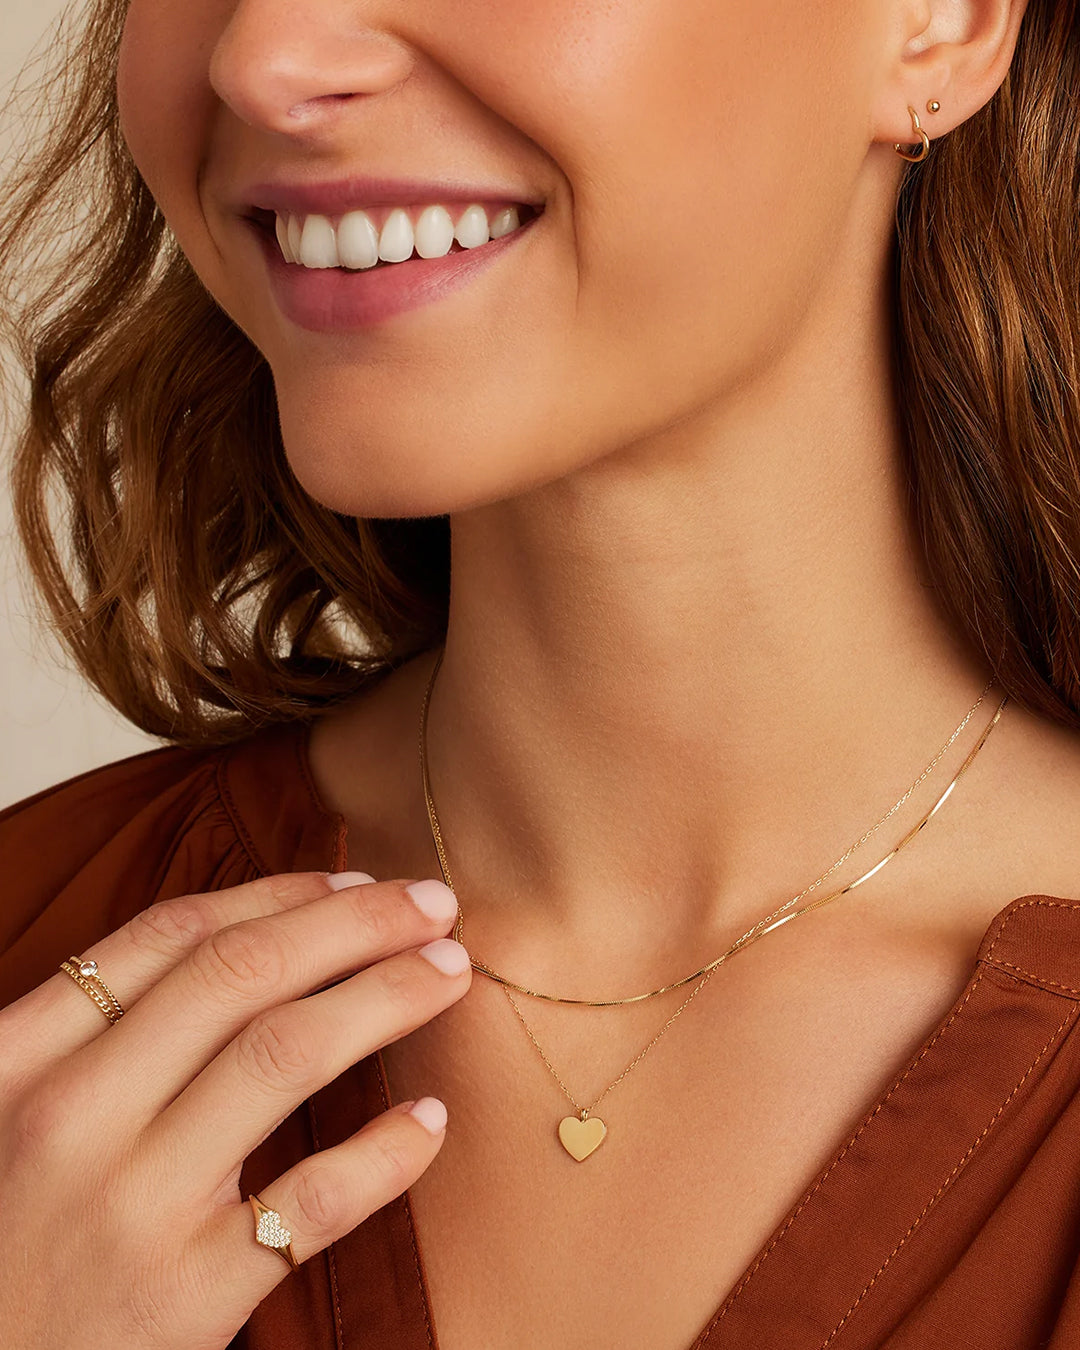 Heart Necklace in 14K Solid Gold, Women's by Gorjana